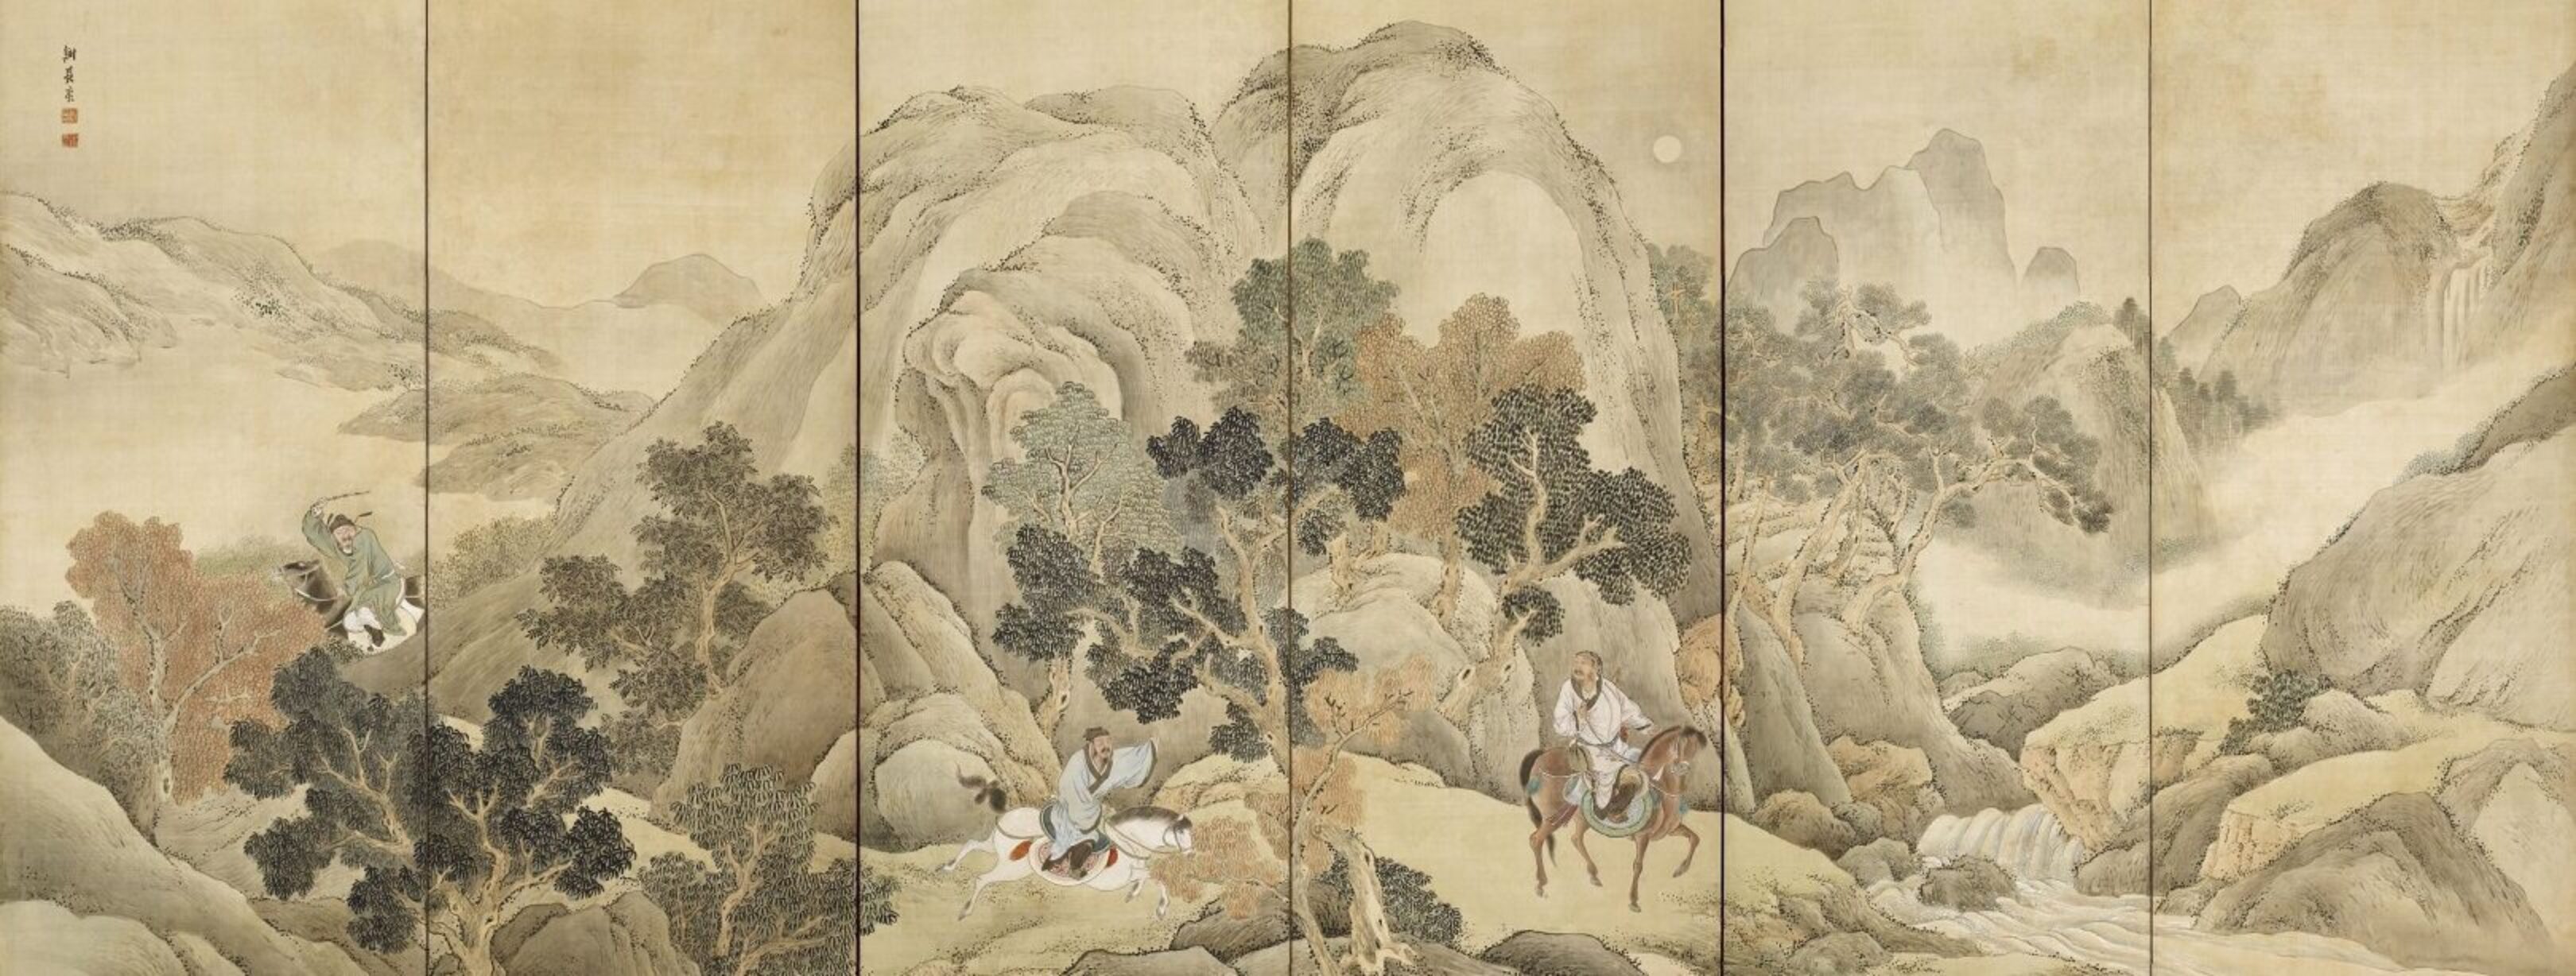 1620-Xiao_He_chases_Han_Xin_by_Yosa_Buson_(Nomura_Art_Museum)